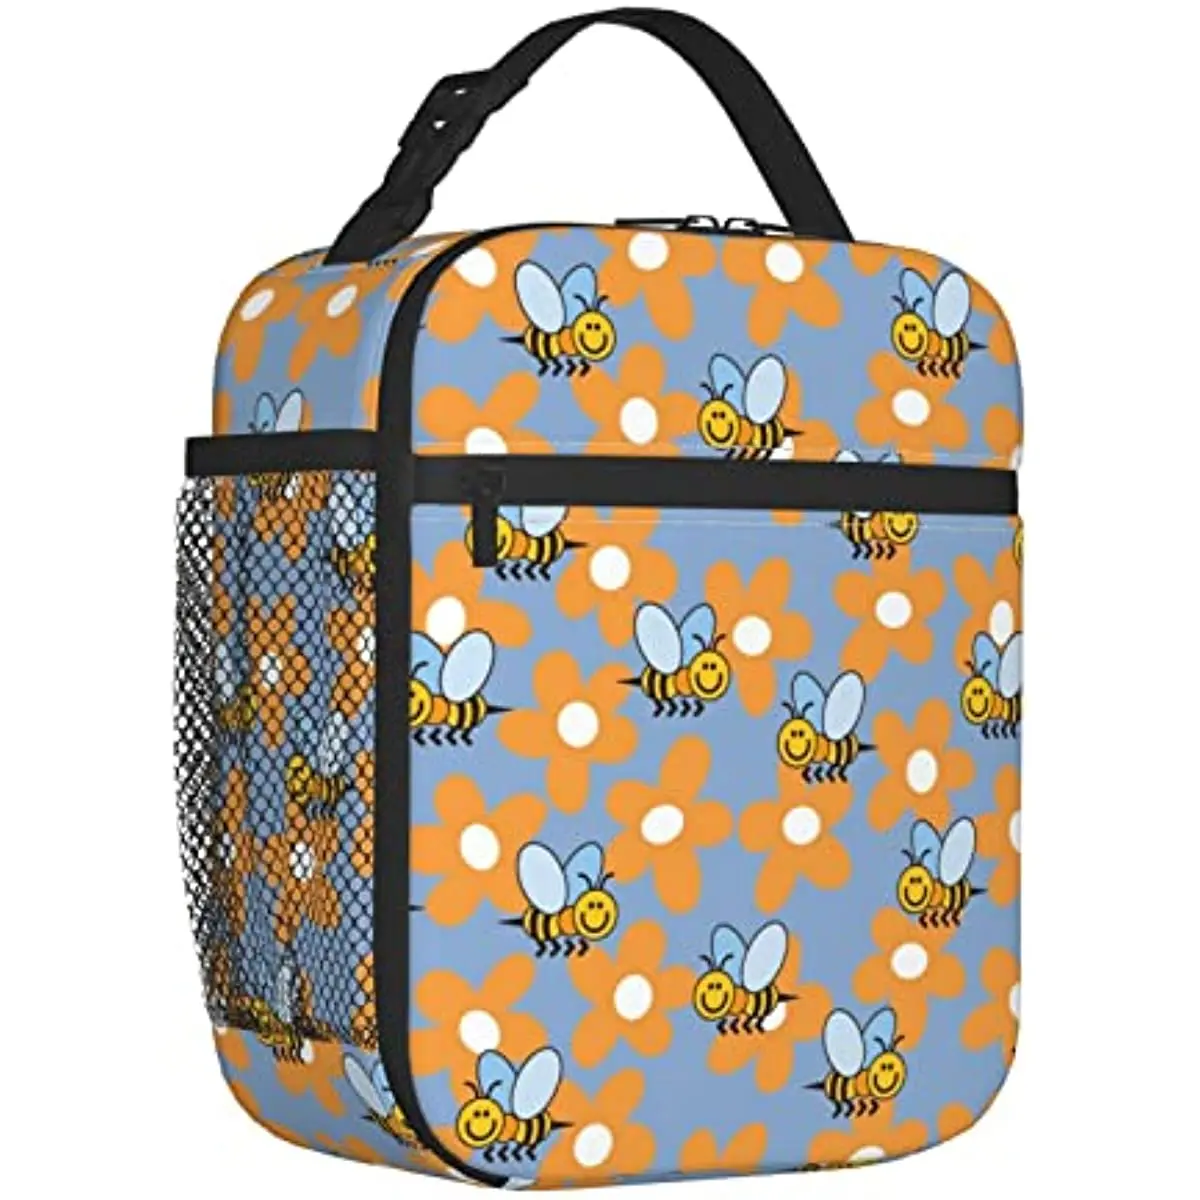 

Изолированная сумка для ланча с пчелами и цветами, многоразовый охлаждающий Ланч-бокс для женщин и мужчин, сумка-тоут для ланча с боковым карманом для школы, путешествий, работы